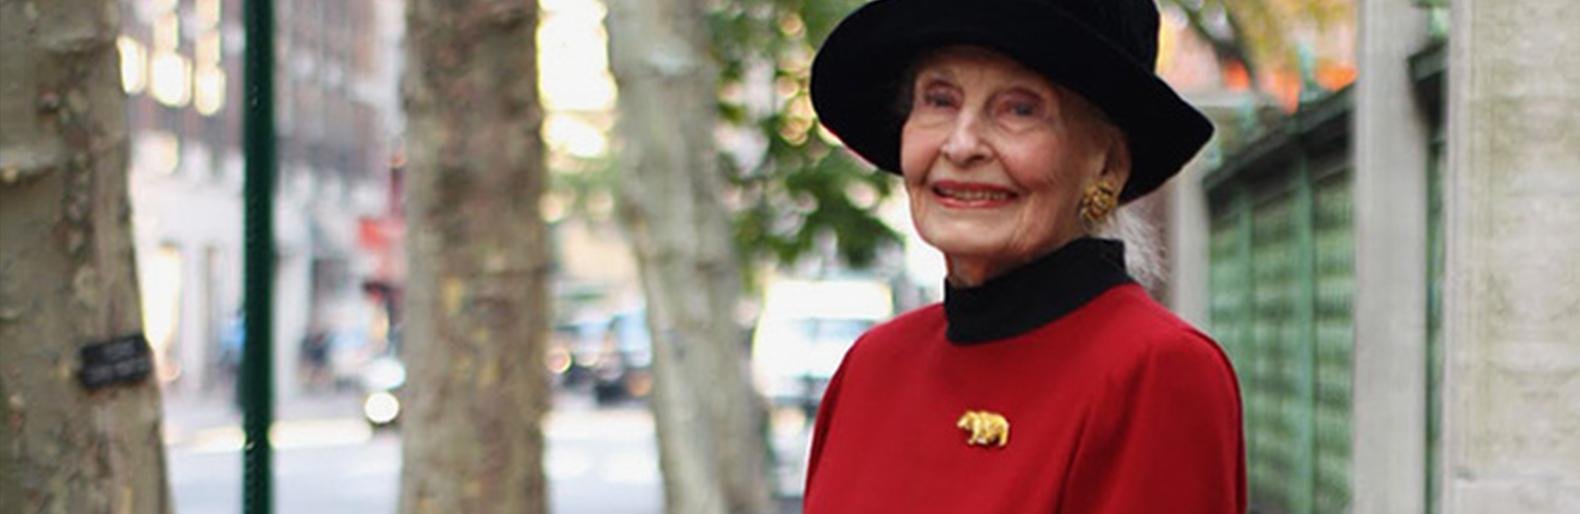 Регина Бретт в свои 90 лет составила 45 уроков которые преподала жизнь